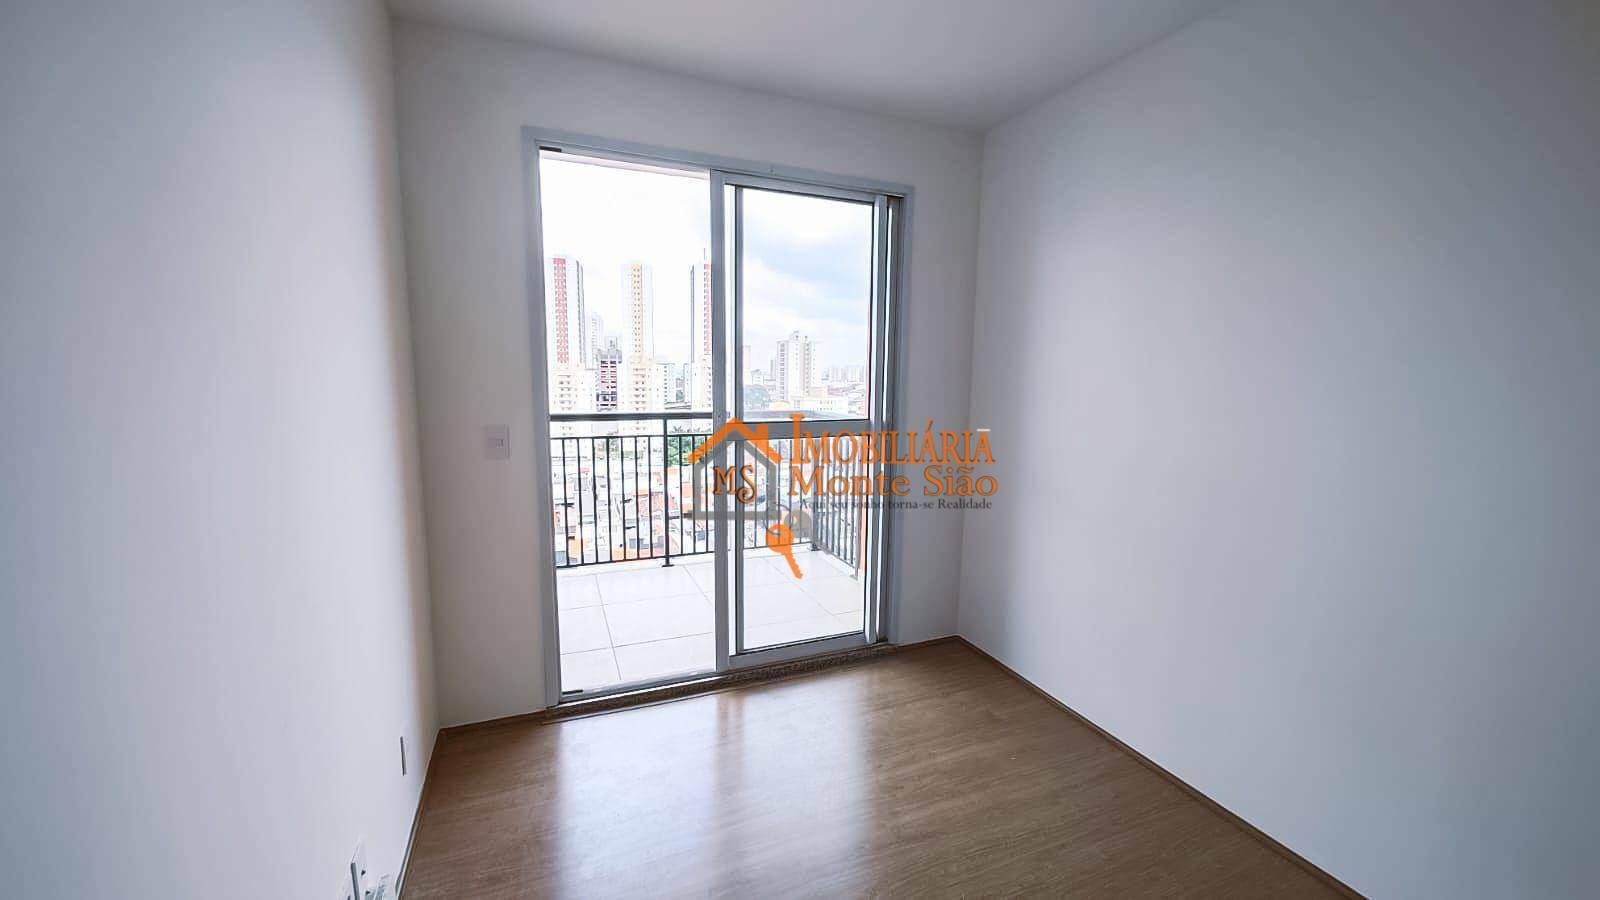 Apartamento com 2 dormitórios à venda, 58 m² por R$ 409.900,00 - Picanco - Guarulhos/SP